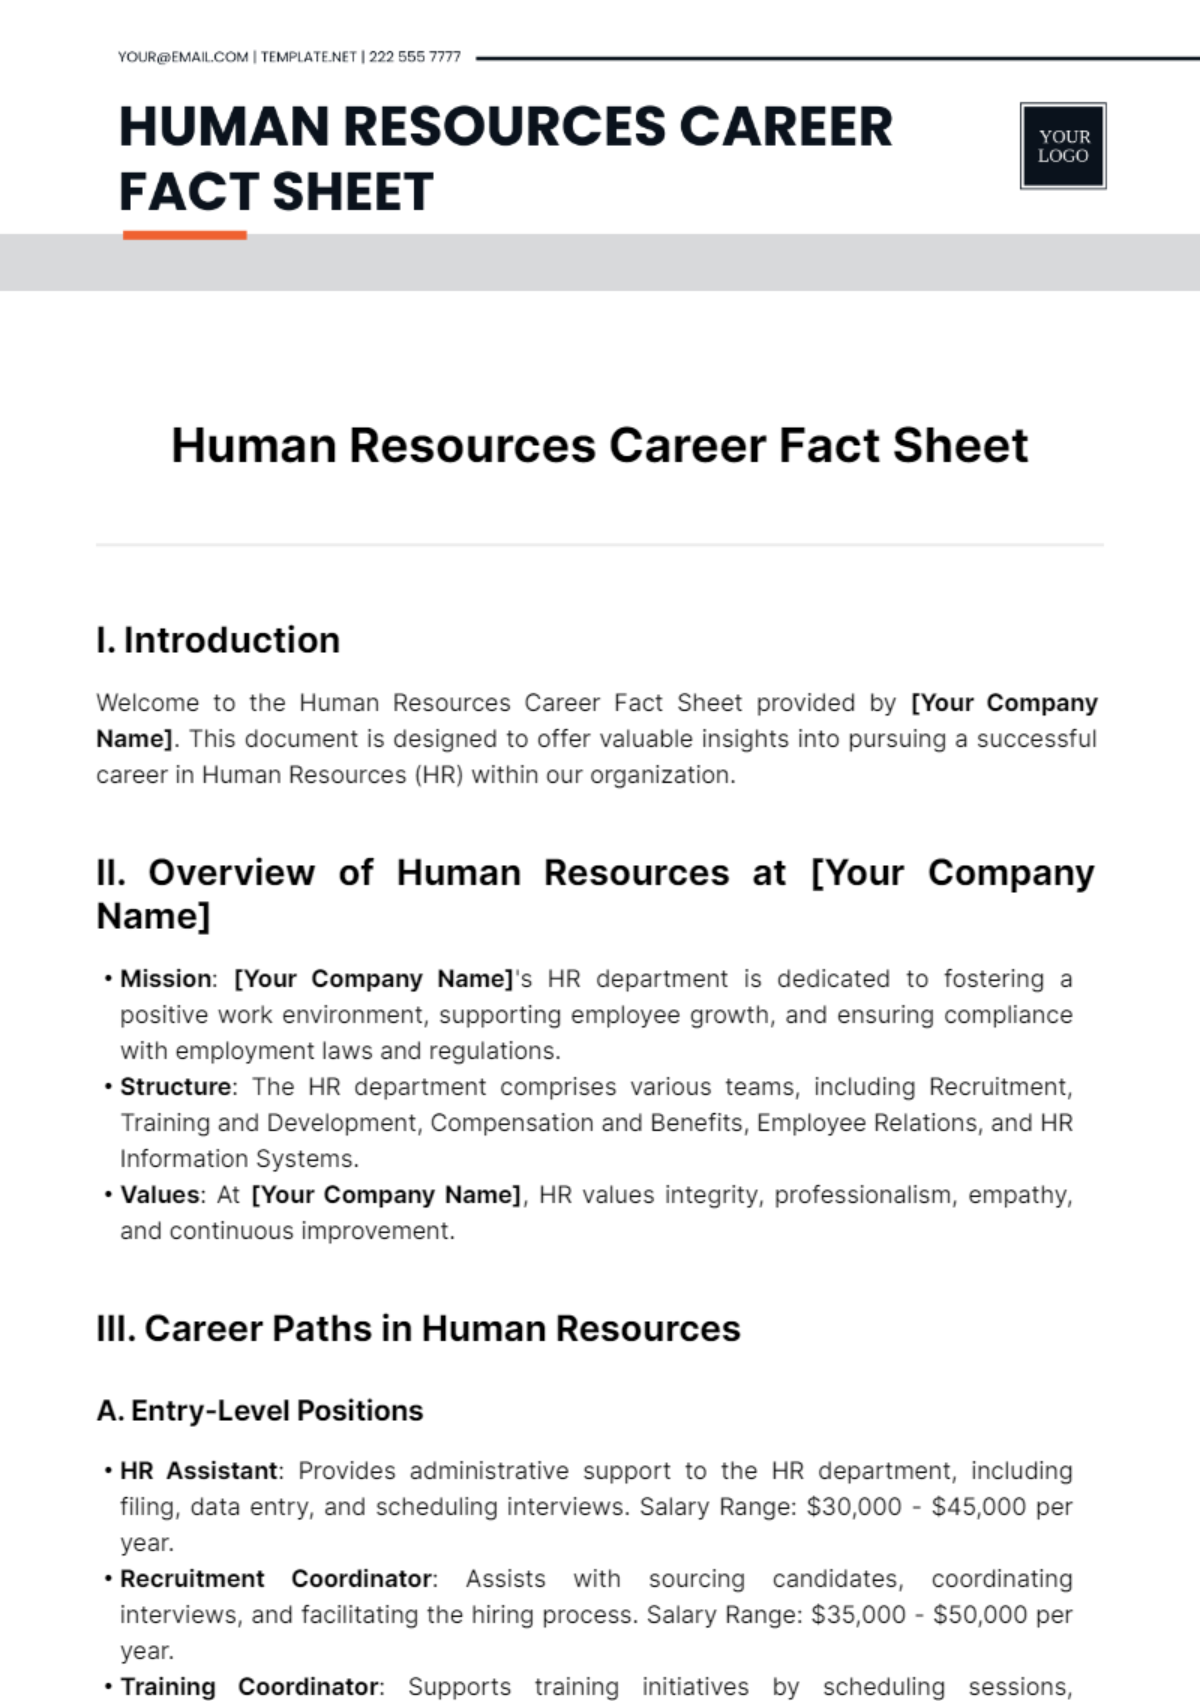 Human Resources Career Fact Sheet Template